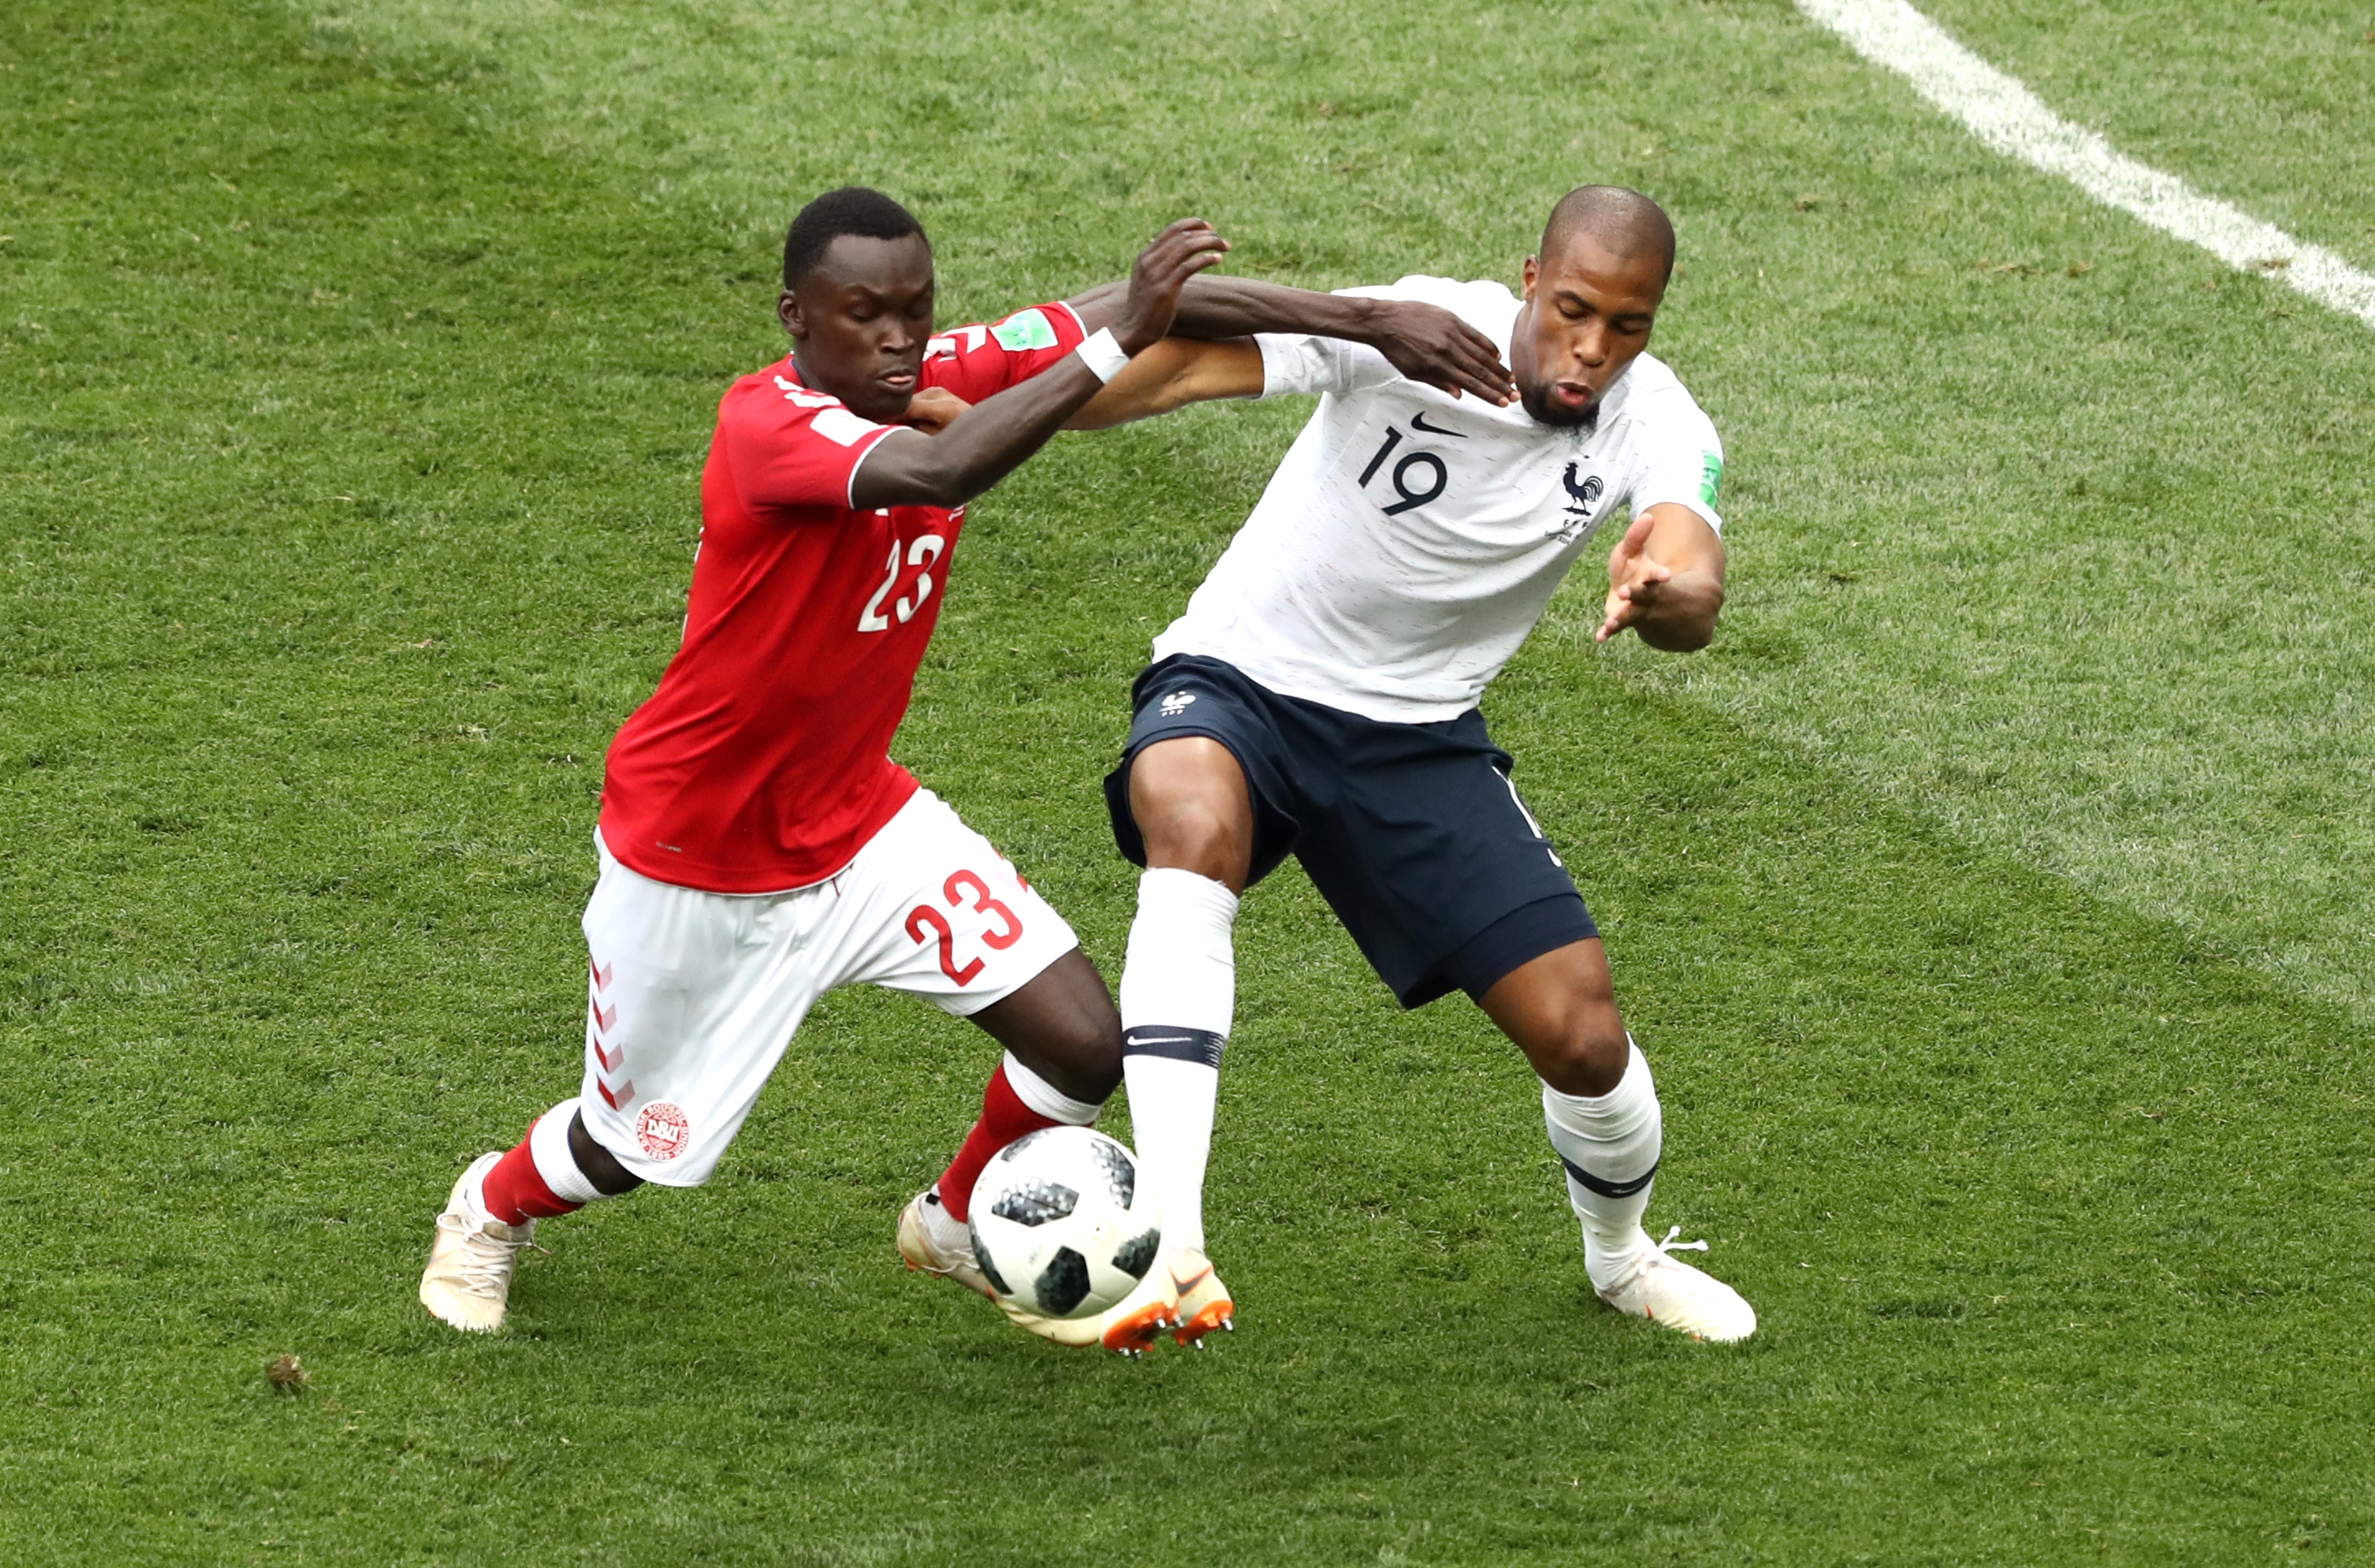 Защитникът Джибрил Сидибе получи травма на десния глезен по време